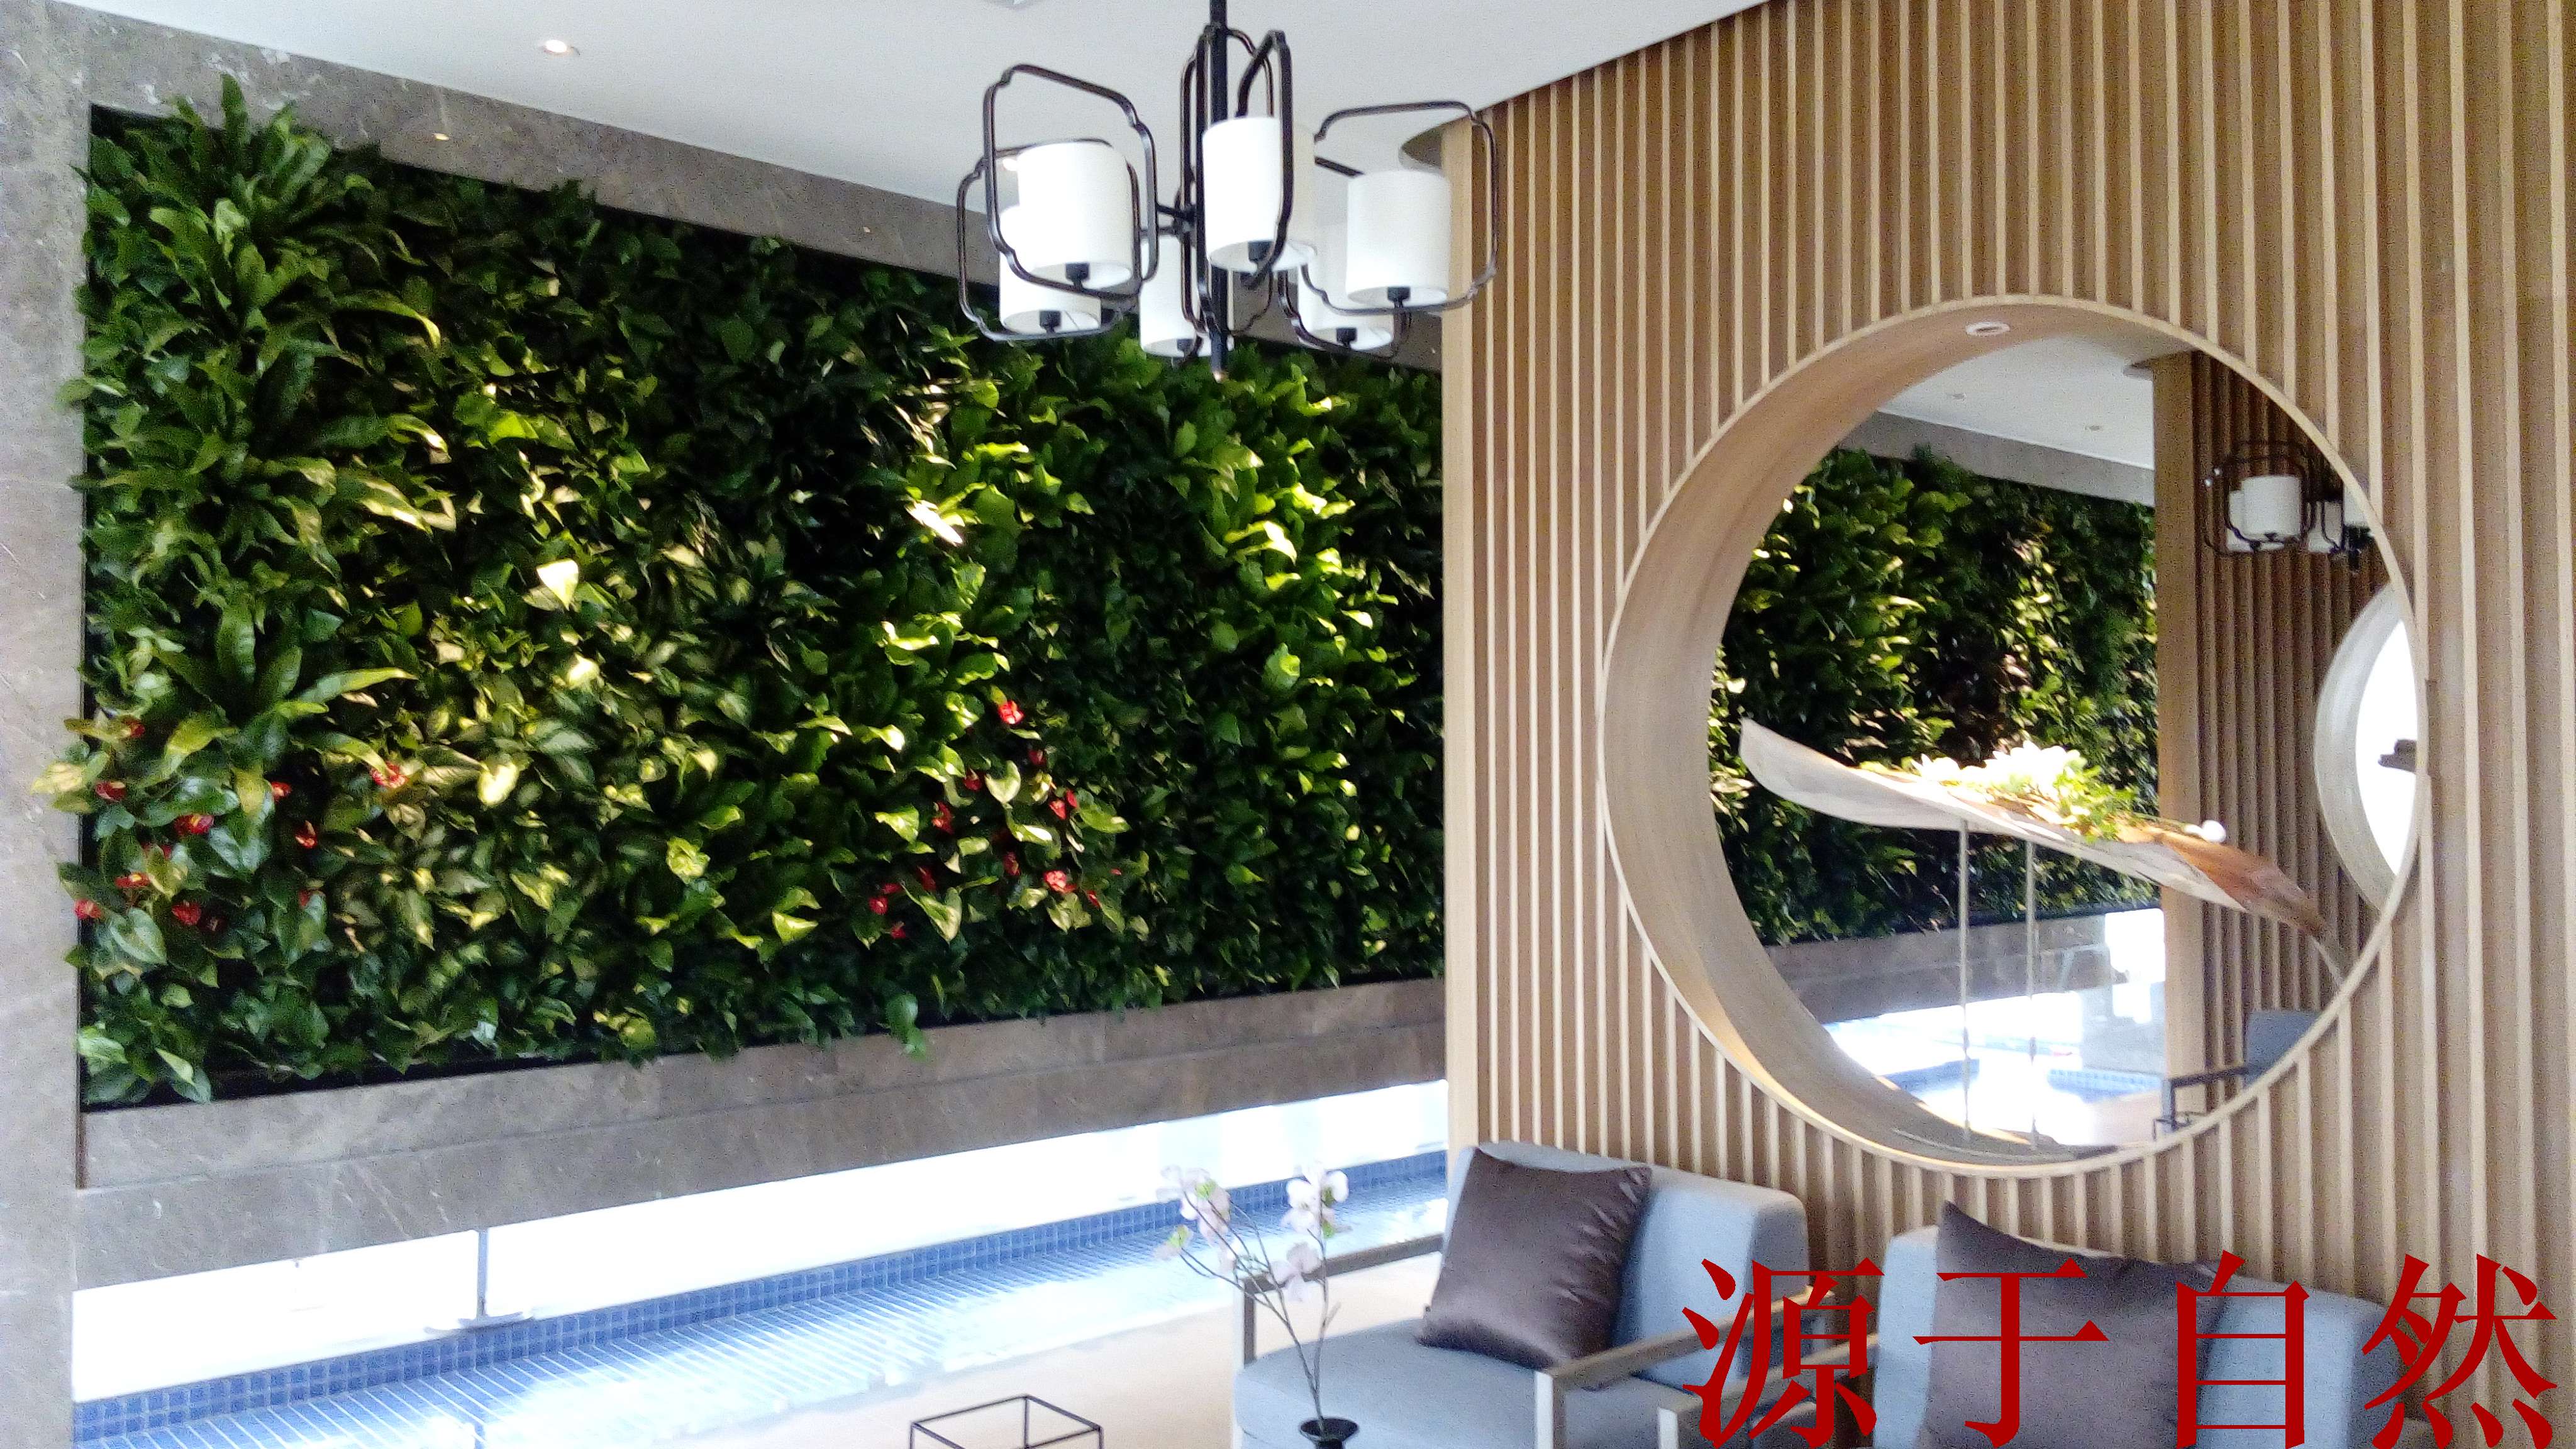 植物墙|仿真植物墙|垂直绿化|室内植物墙|